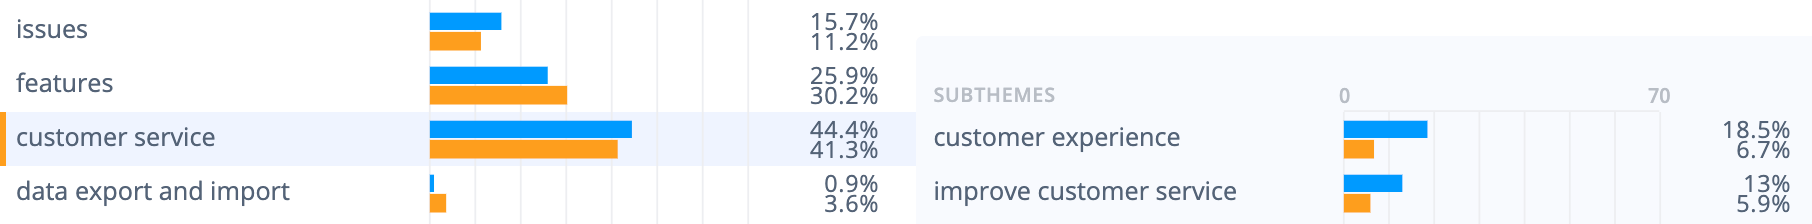 Medallia调查工具优势:客户体验18.5%